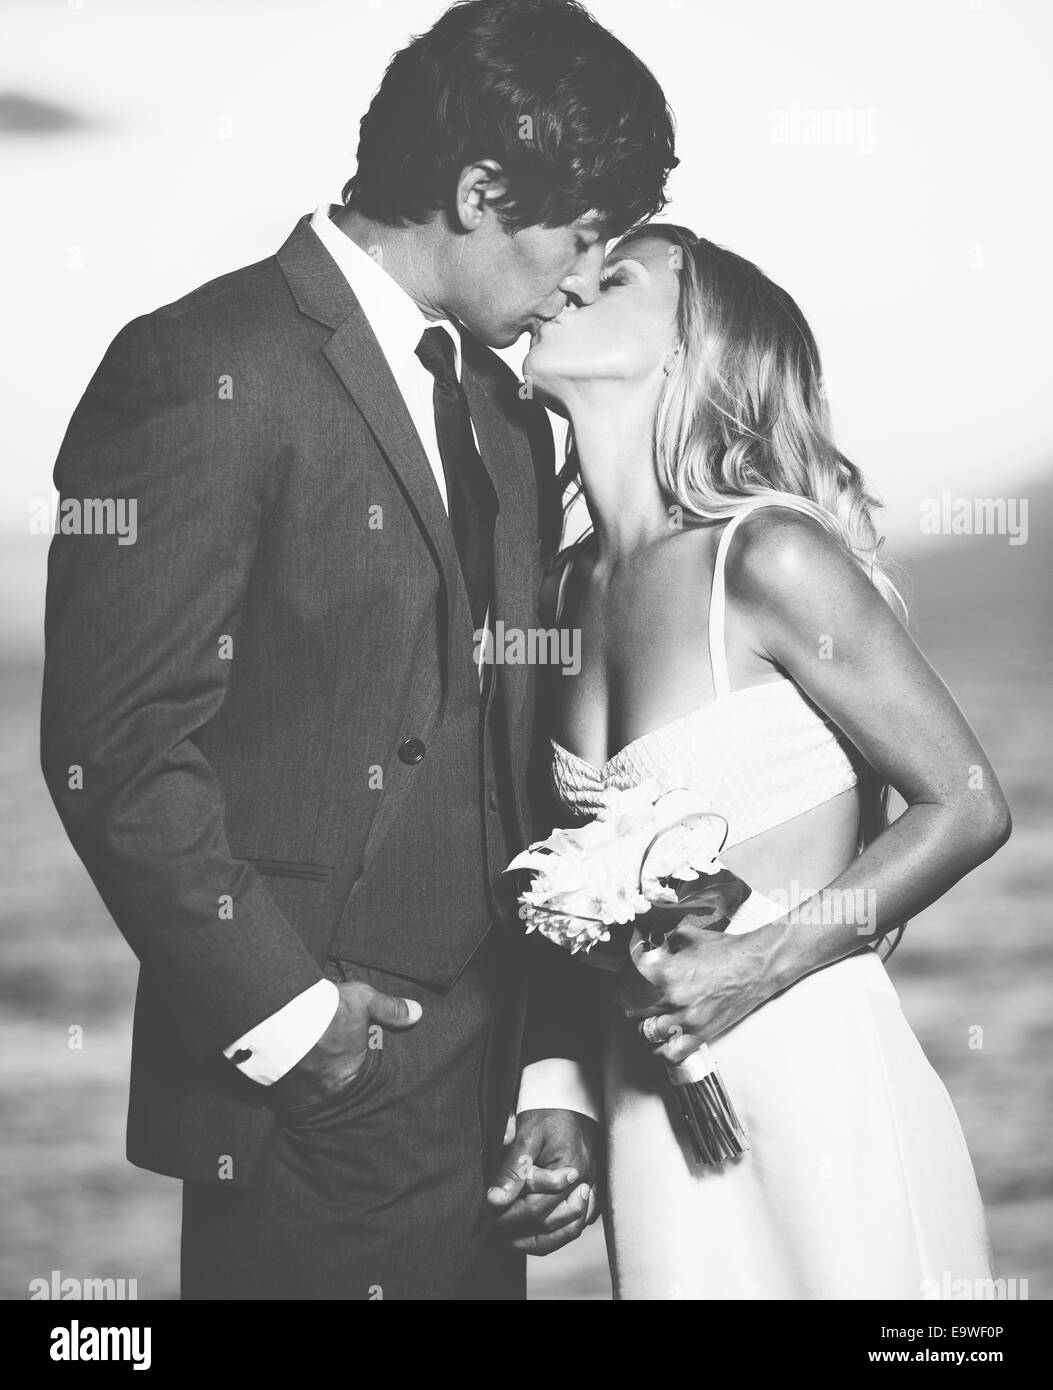 Schöne Hochzeitspaar, Braut und Bräutigam küssen am Strand bei Sonnenuntergang. Schwarz / weiß Foto Stockfoto